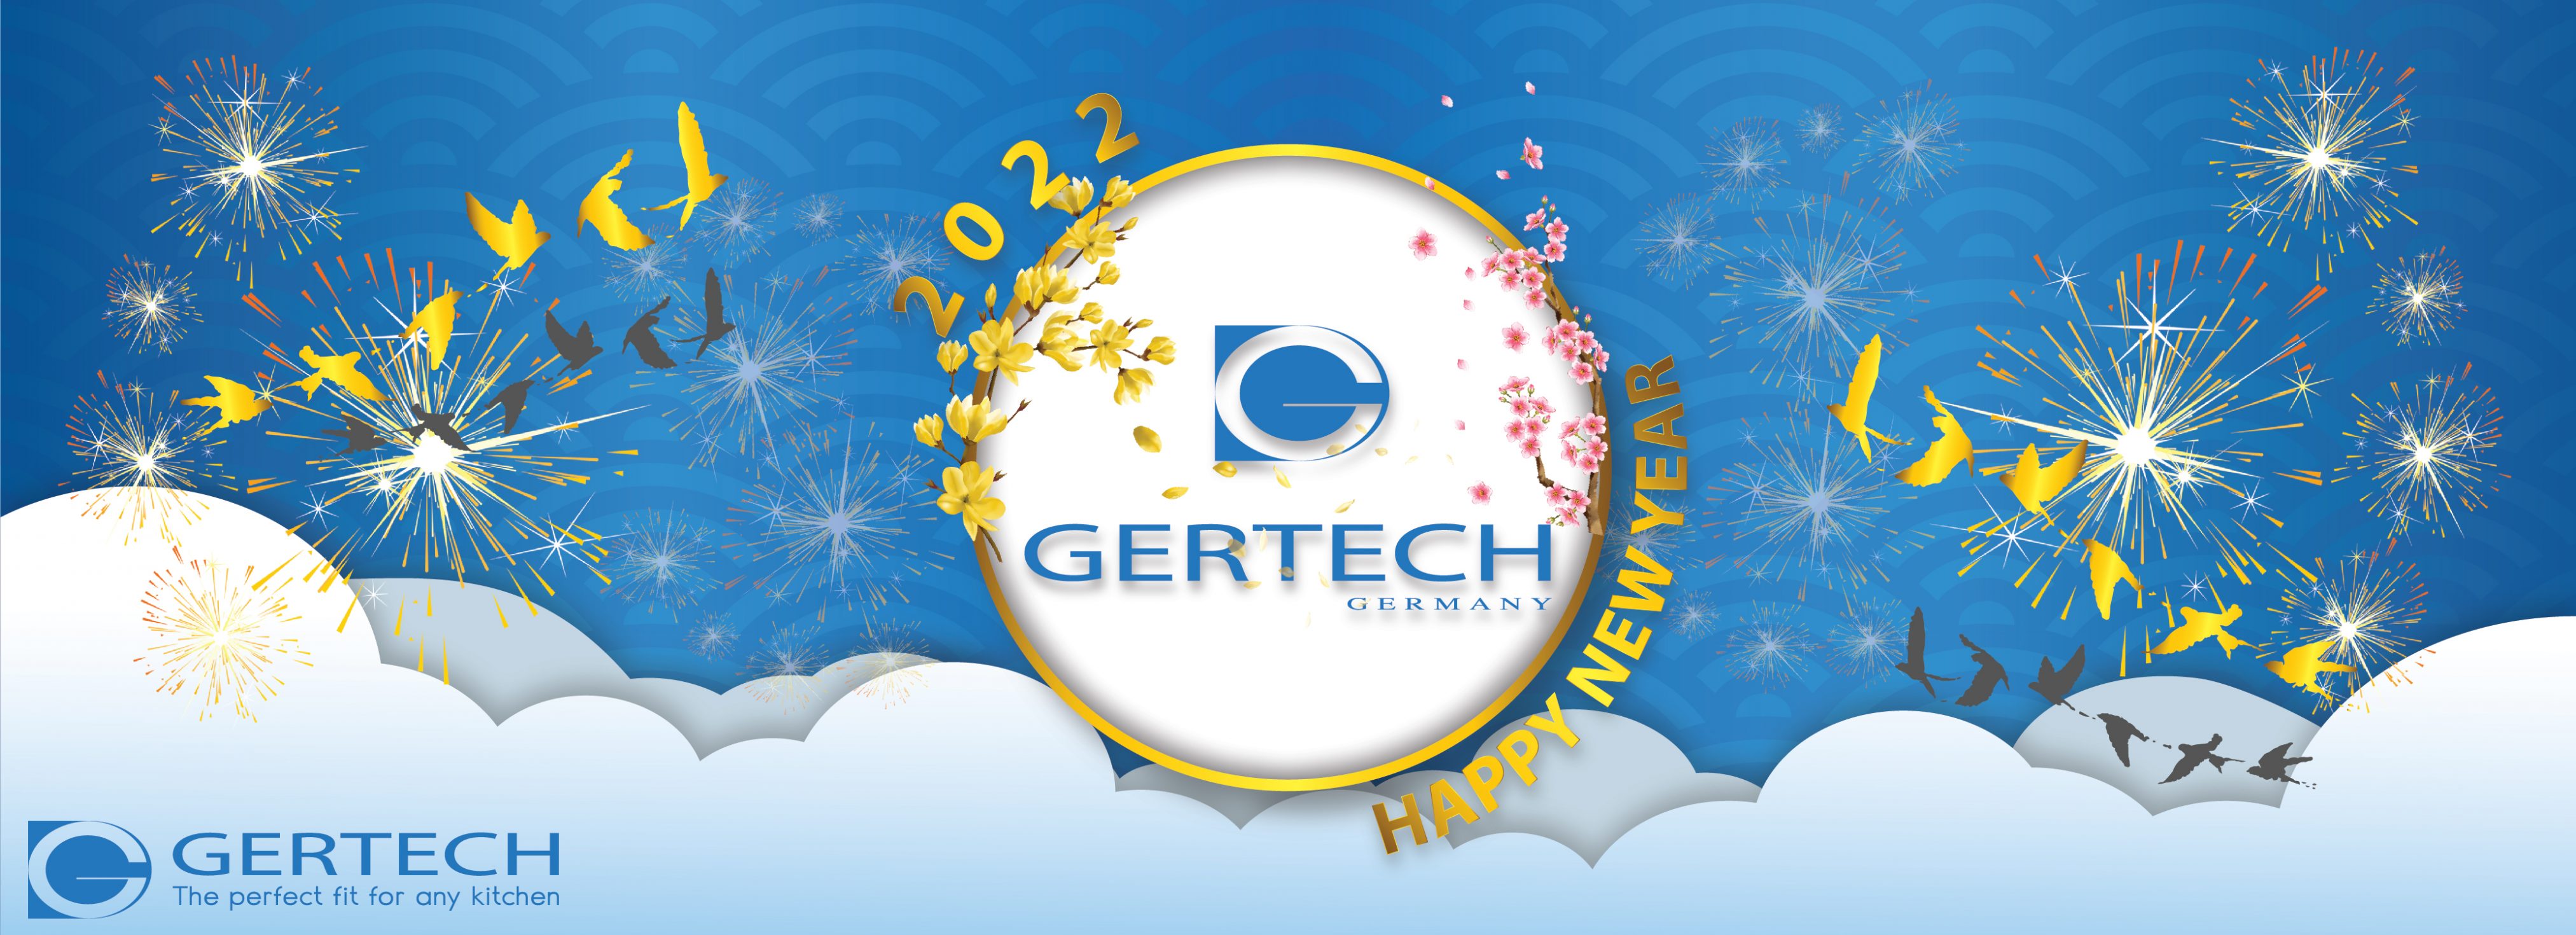 banner web gertechvn